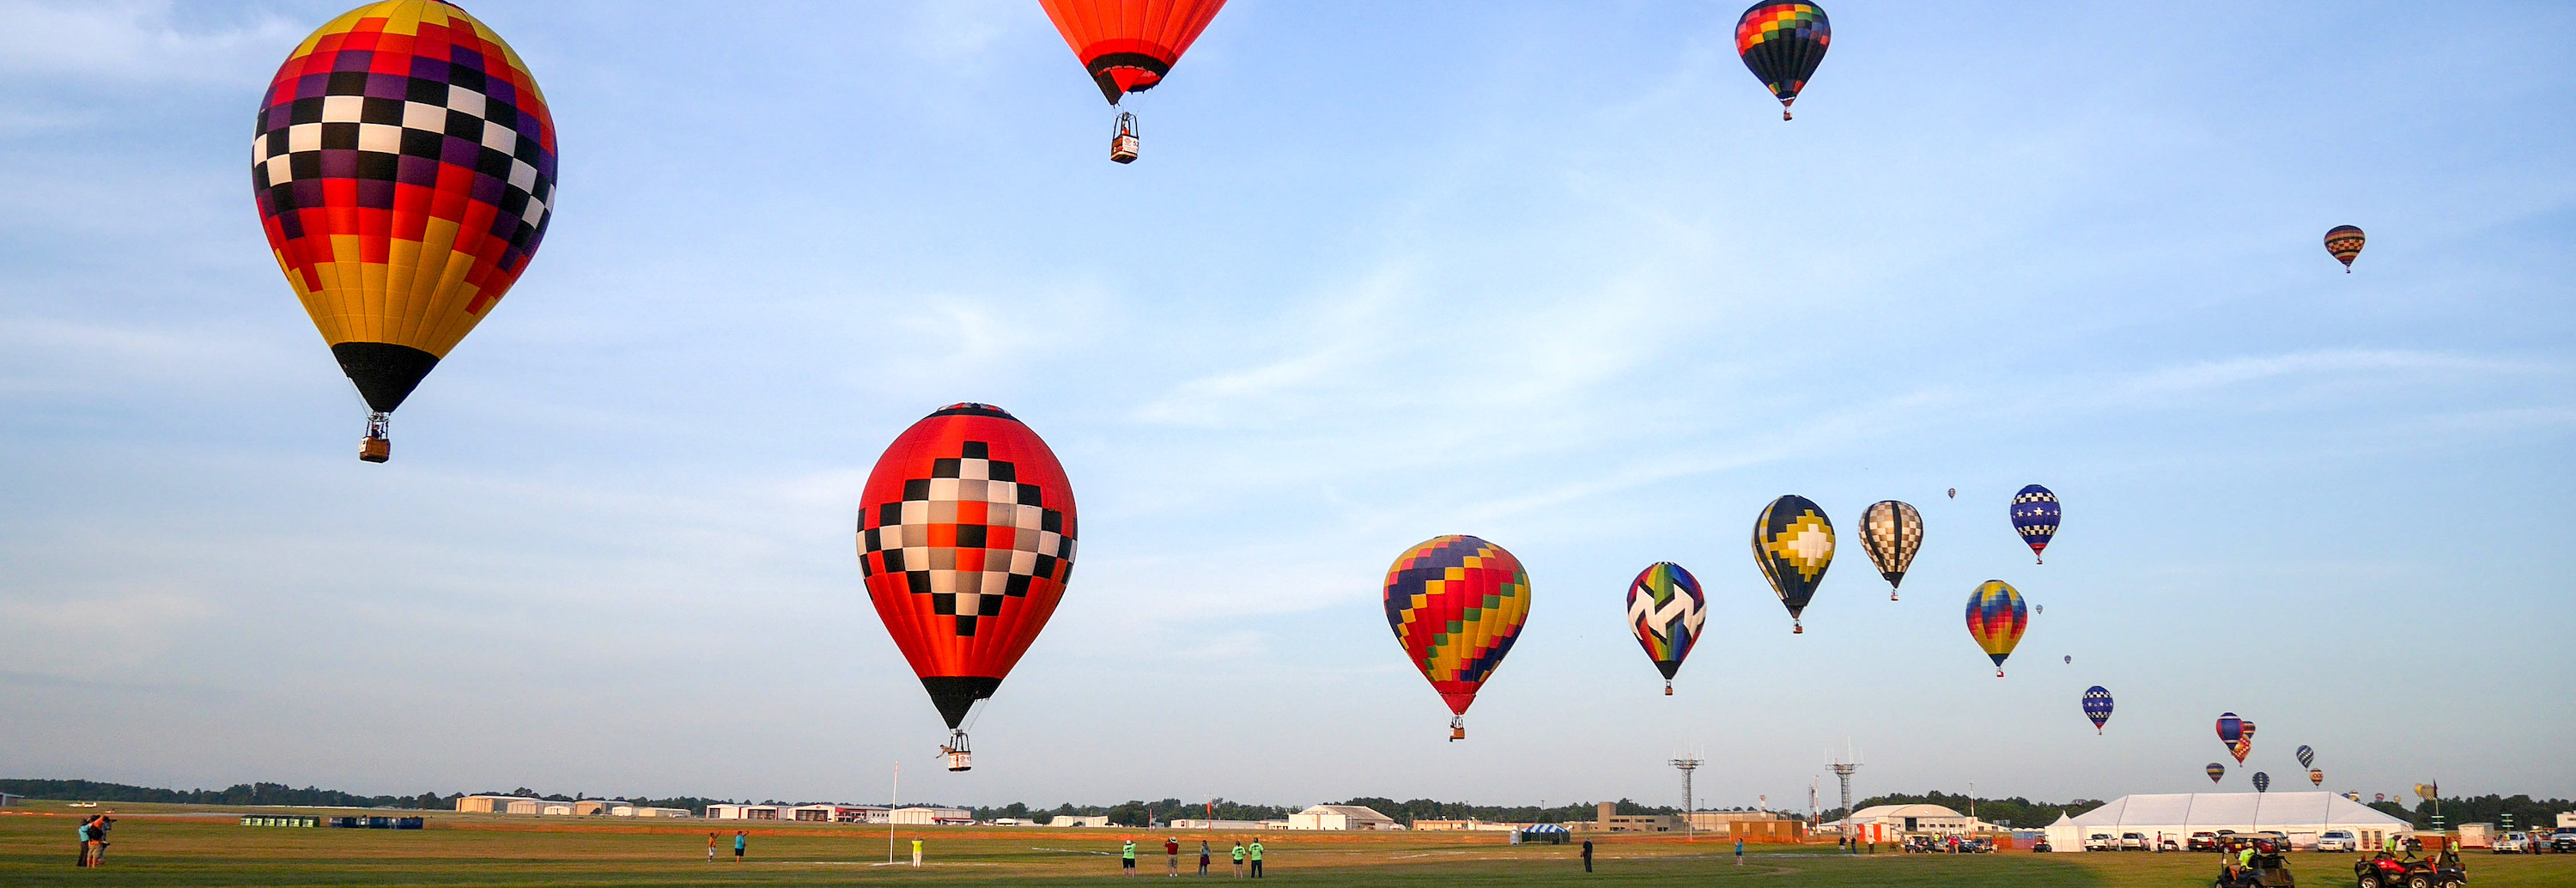 Longview Great Balloon Race